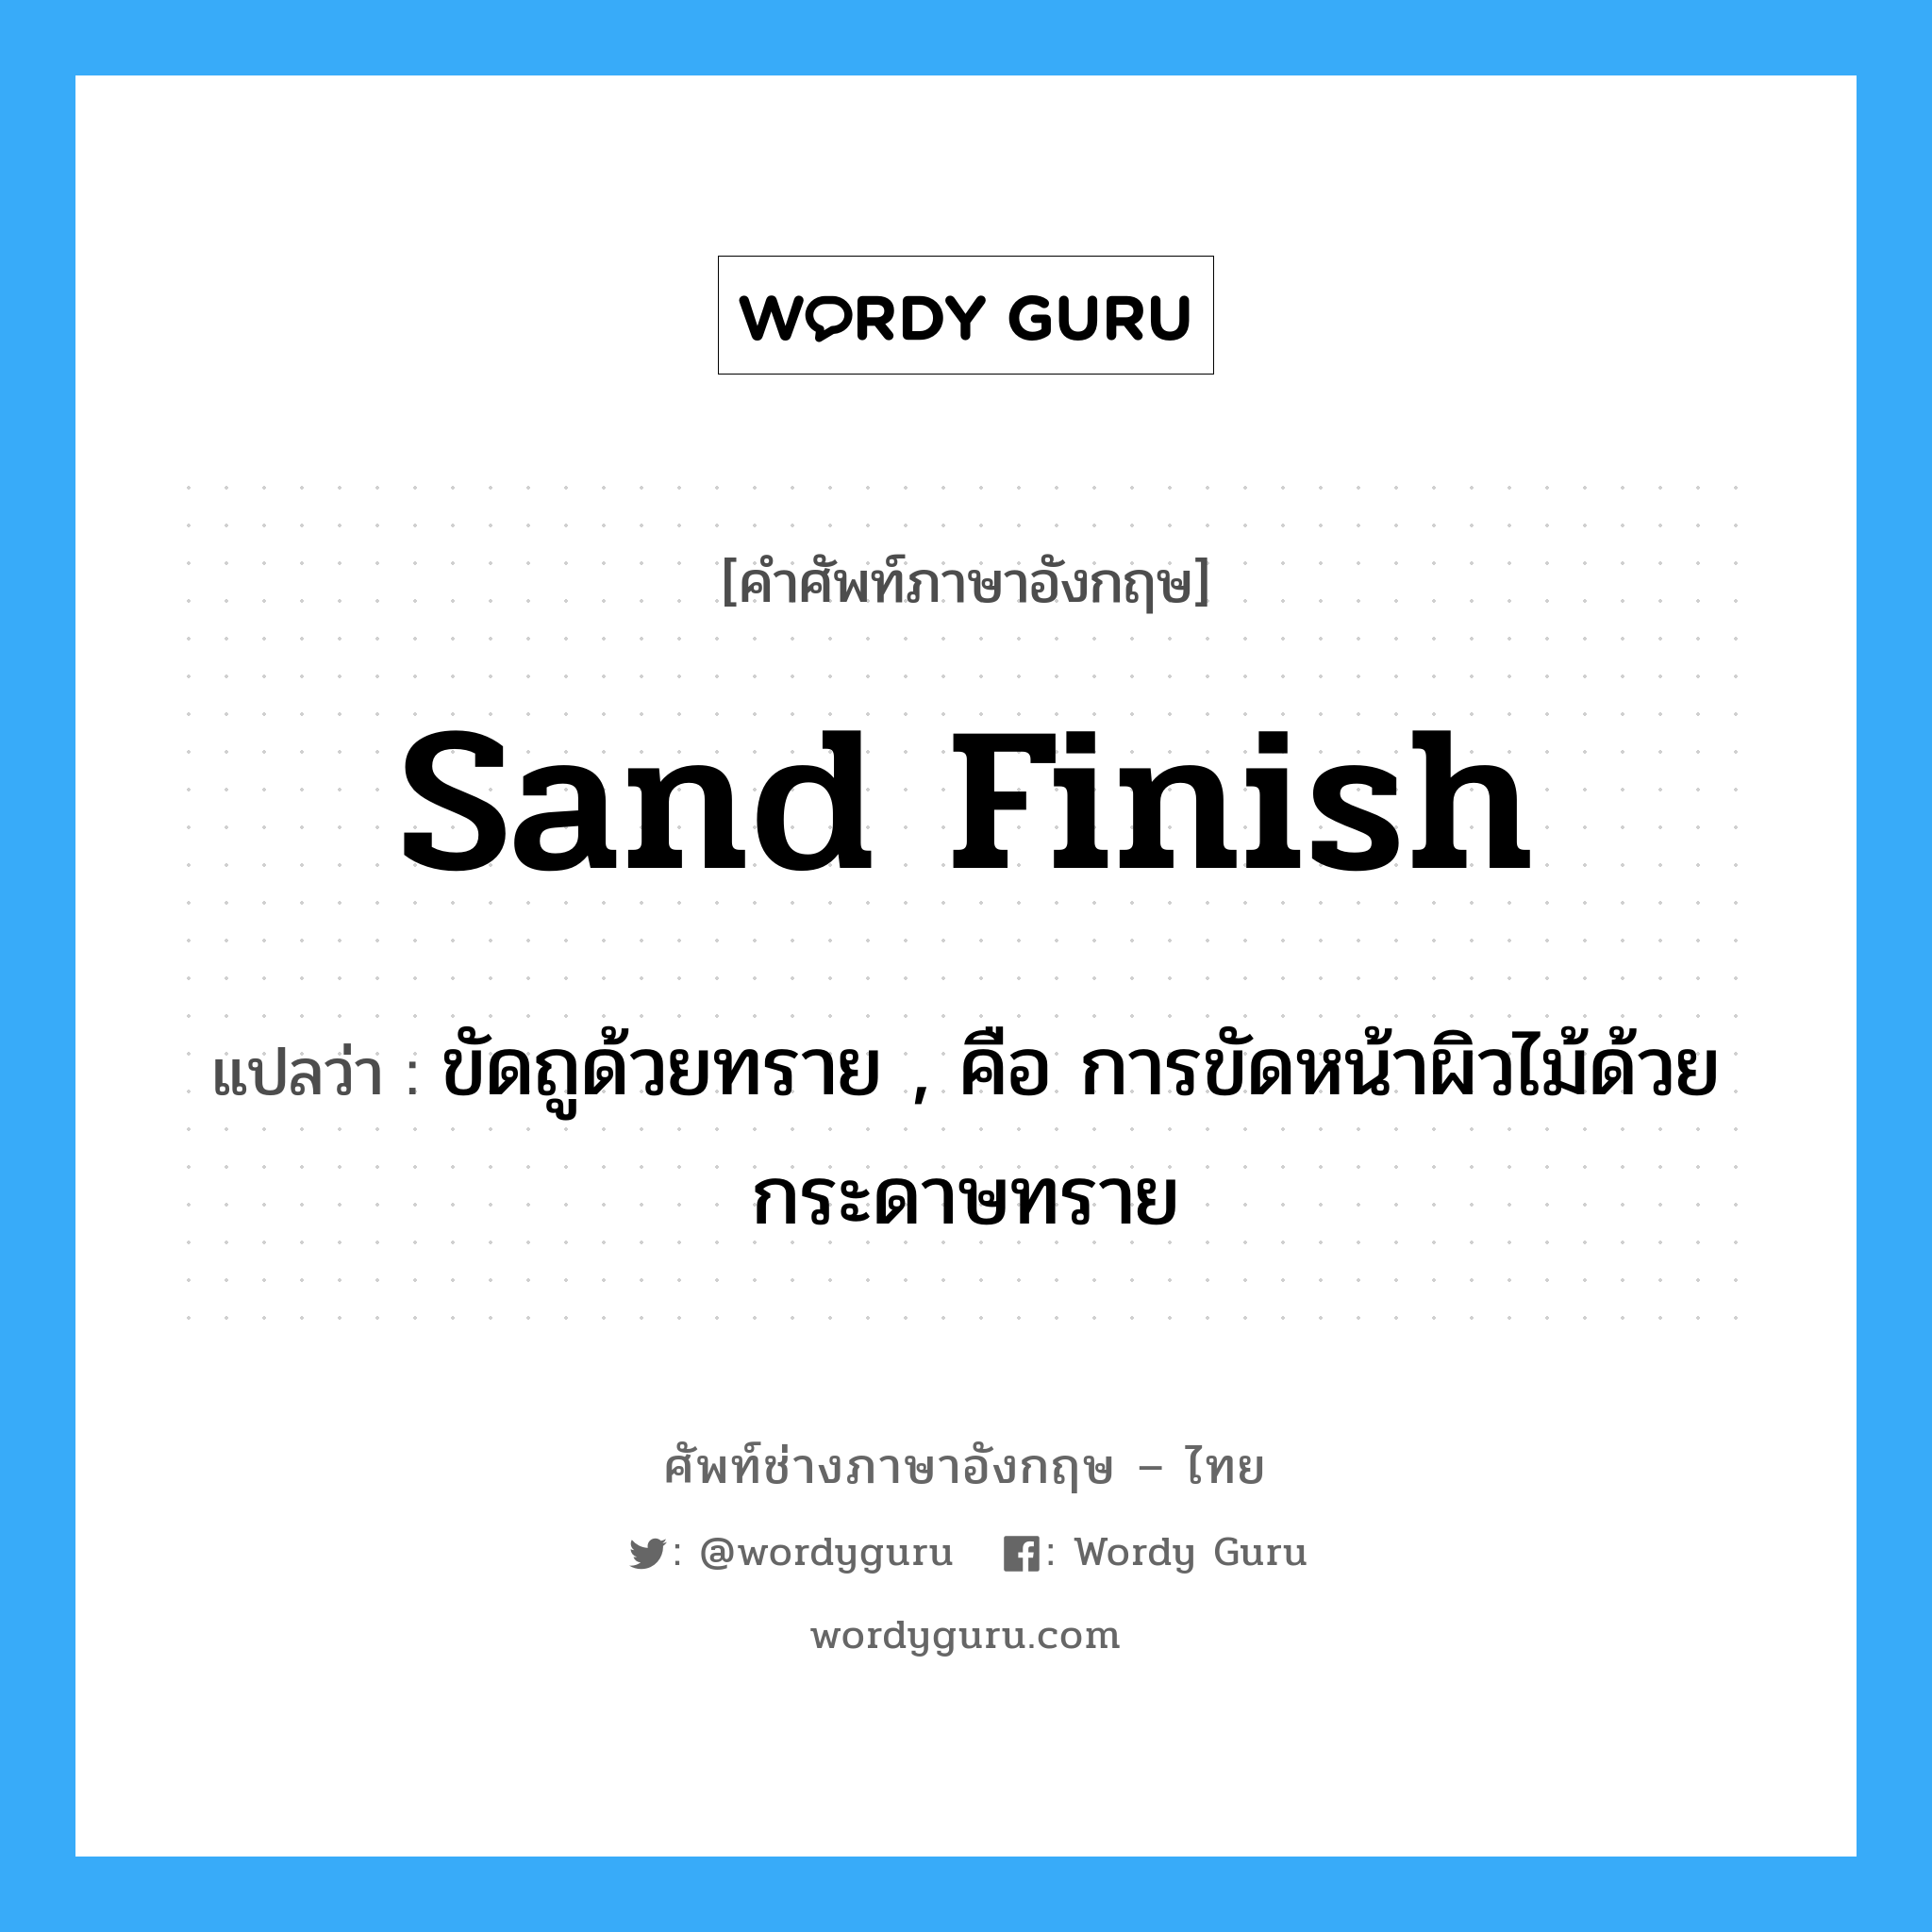 sand finish แปลว่า?, คำศัพท์ช่างภาษาอังกฤษ - ไทย sand finish คำศัพท์ภาษาอังกฤษ sand finish แปลว่า ขัดถูด้วยทราย , คือ การขัดหน้าผิวไม้ด้วยกระดาษทราย